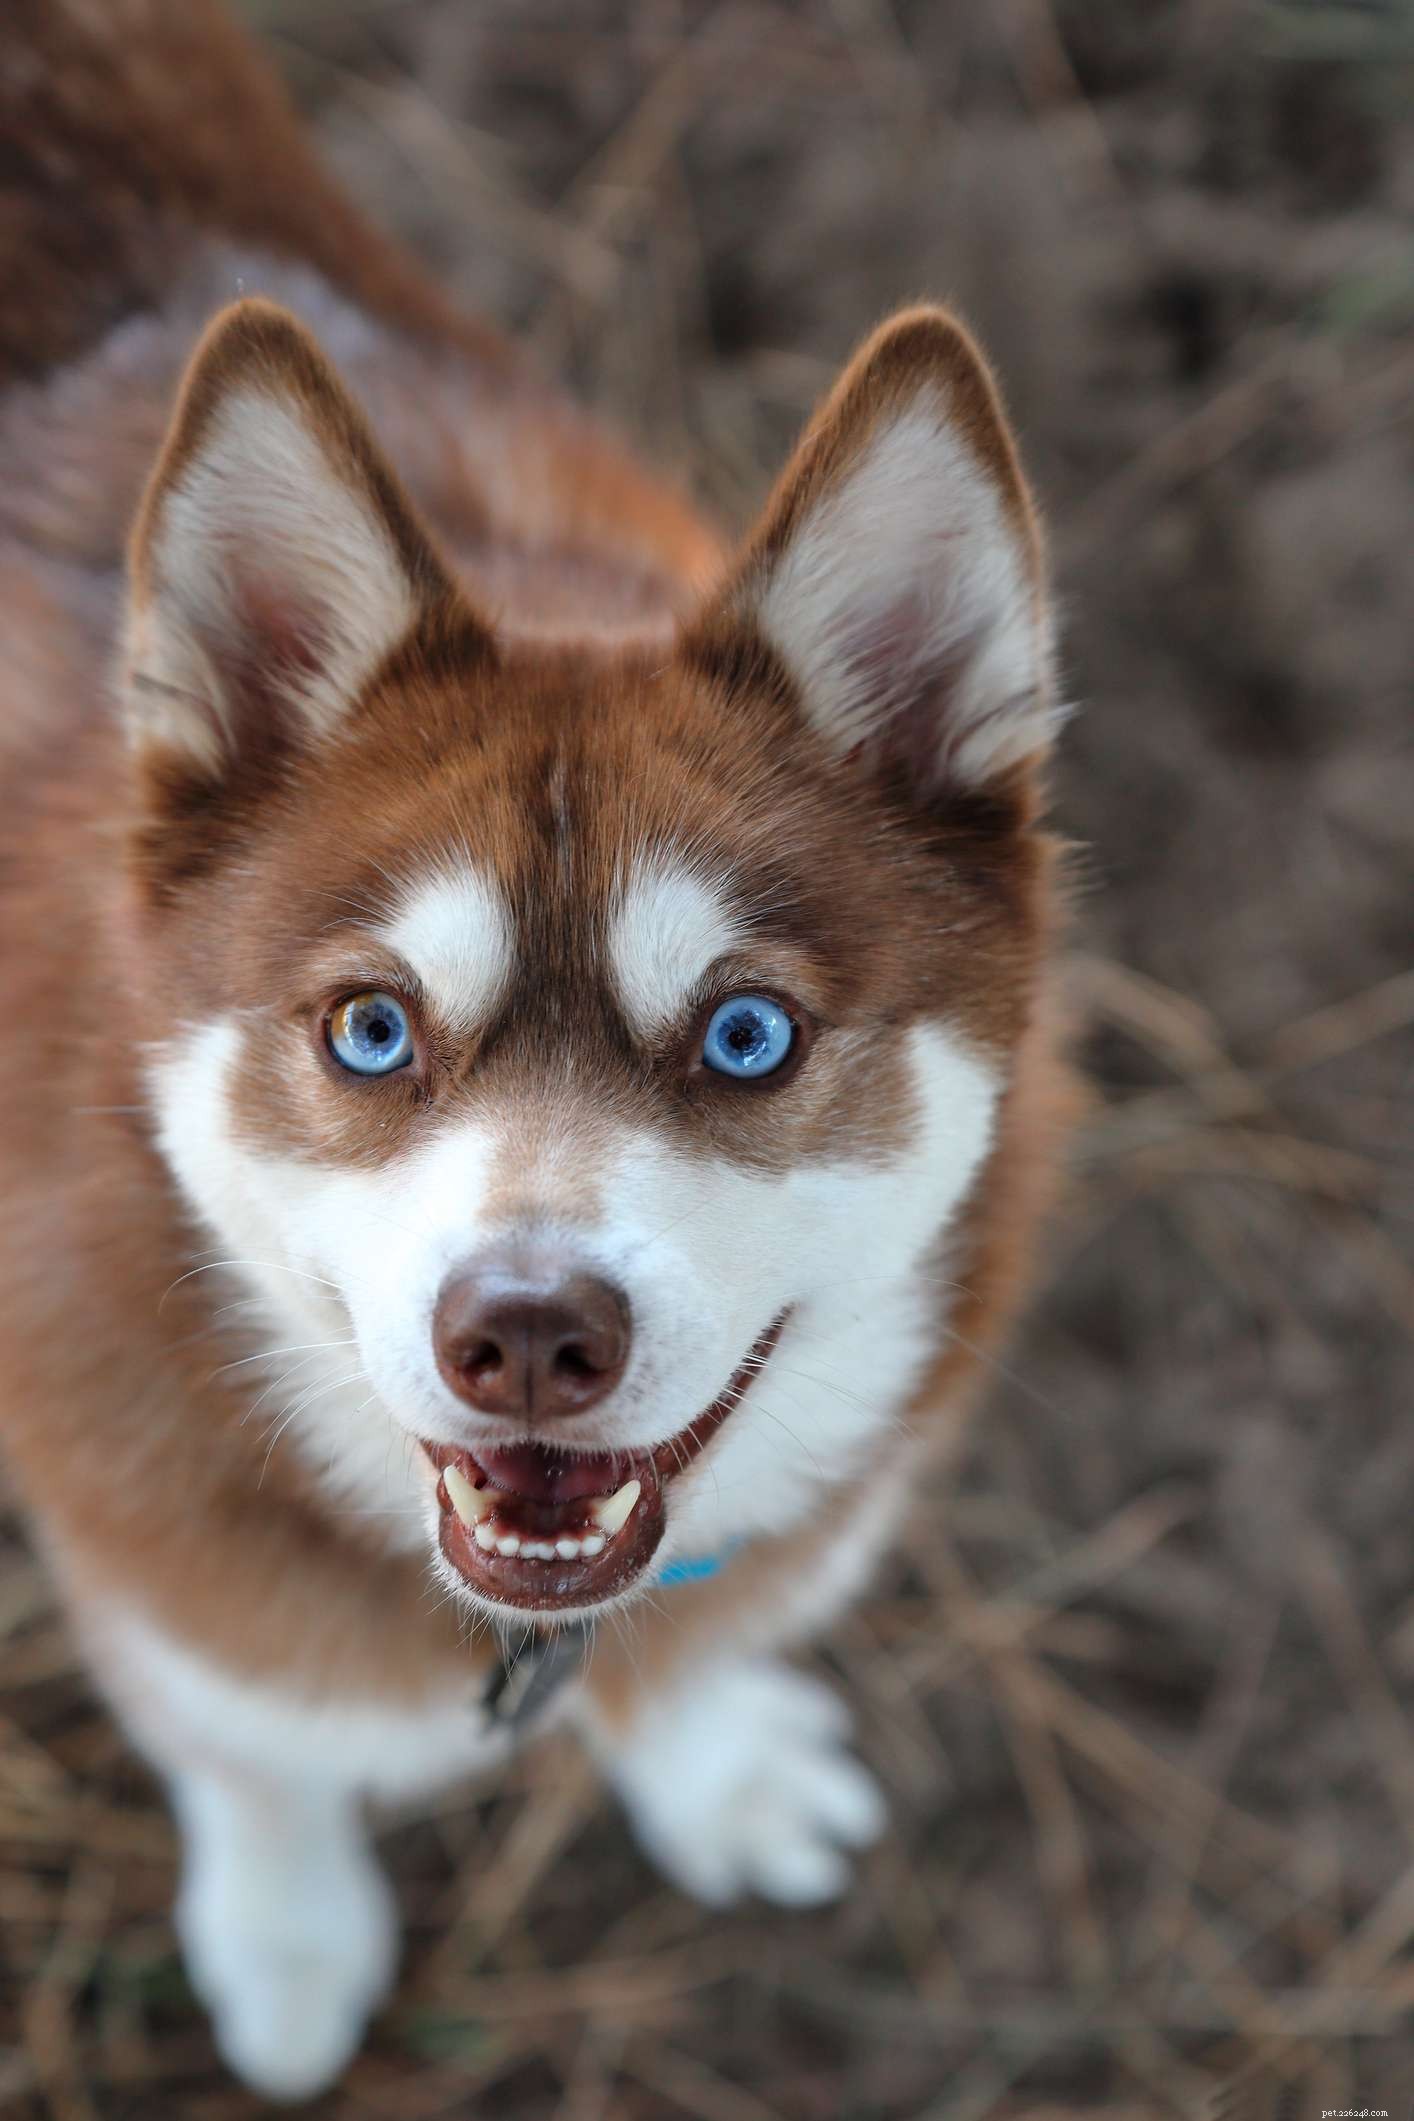 10 psích plemen s modrýma očima